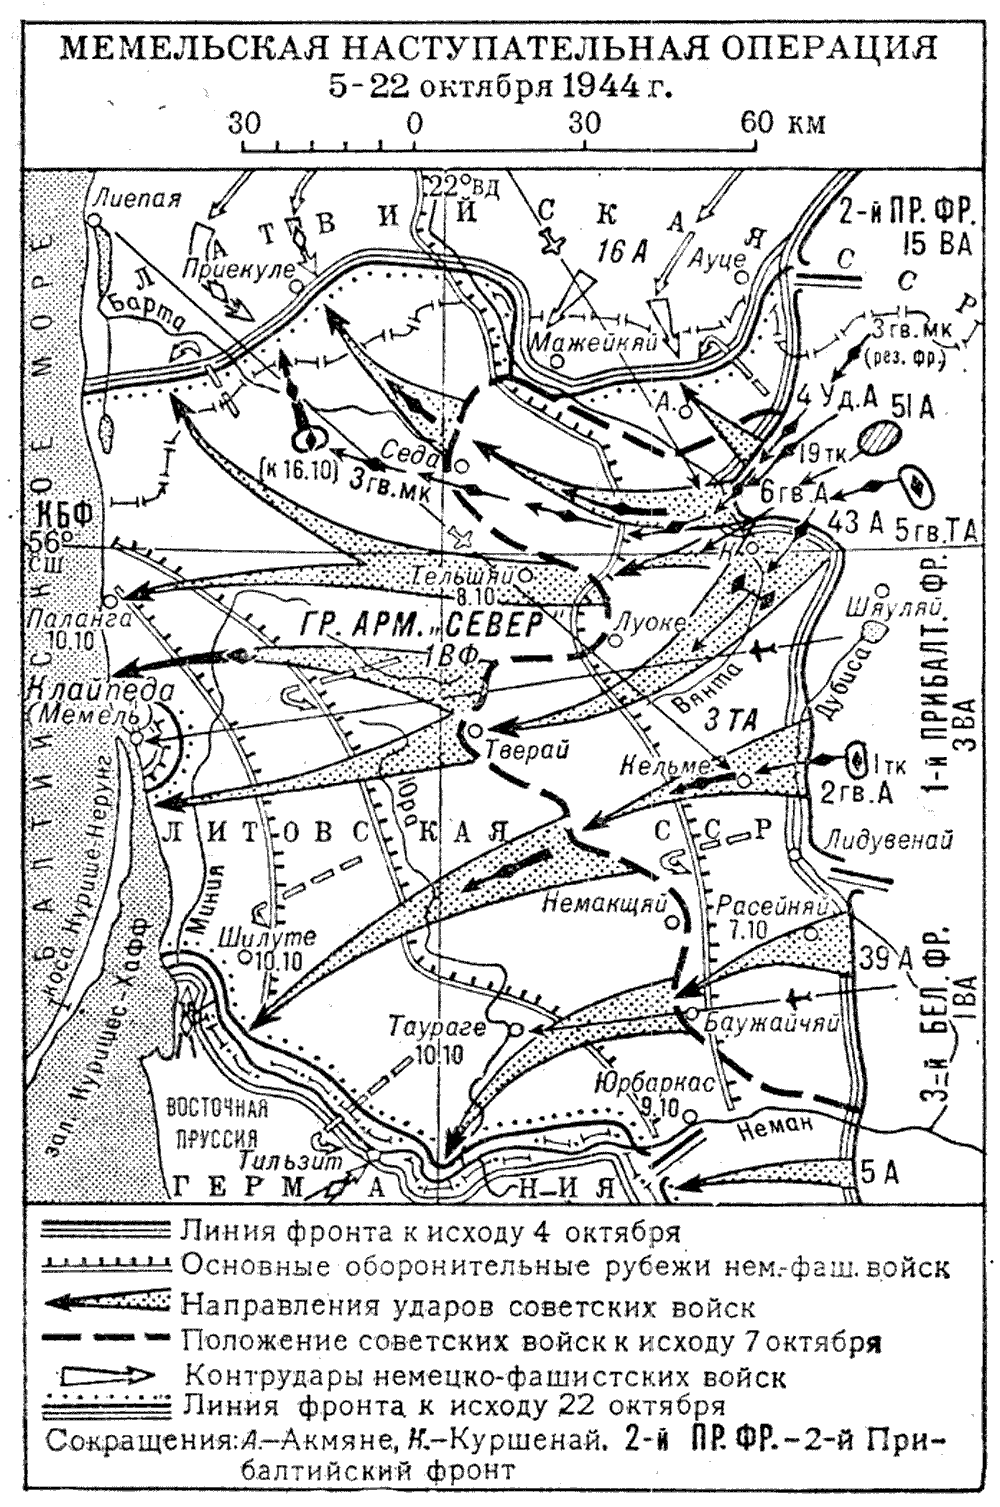 Крупнейшая операция 1944 г